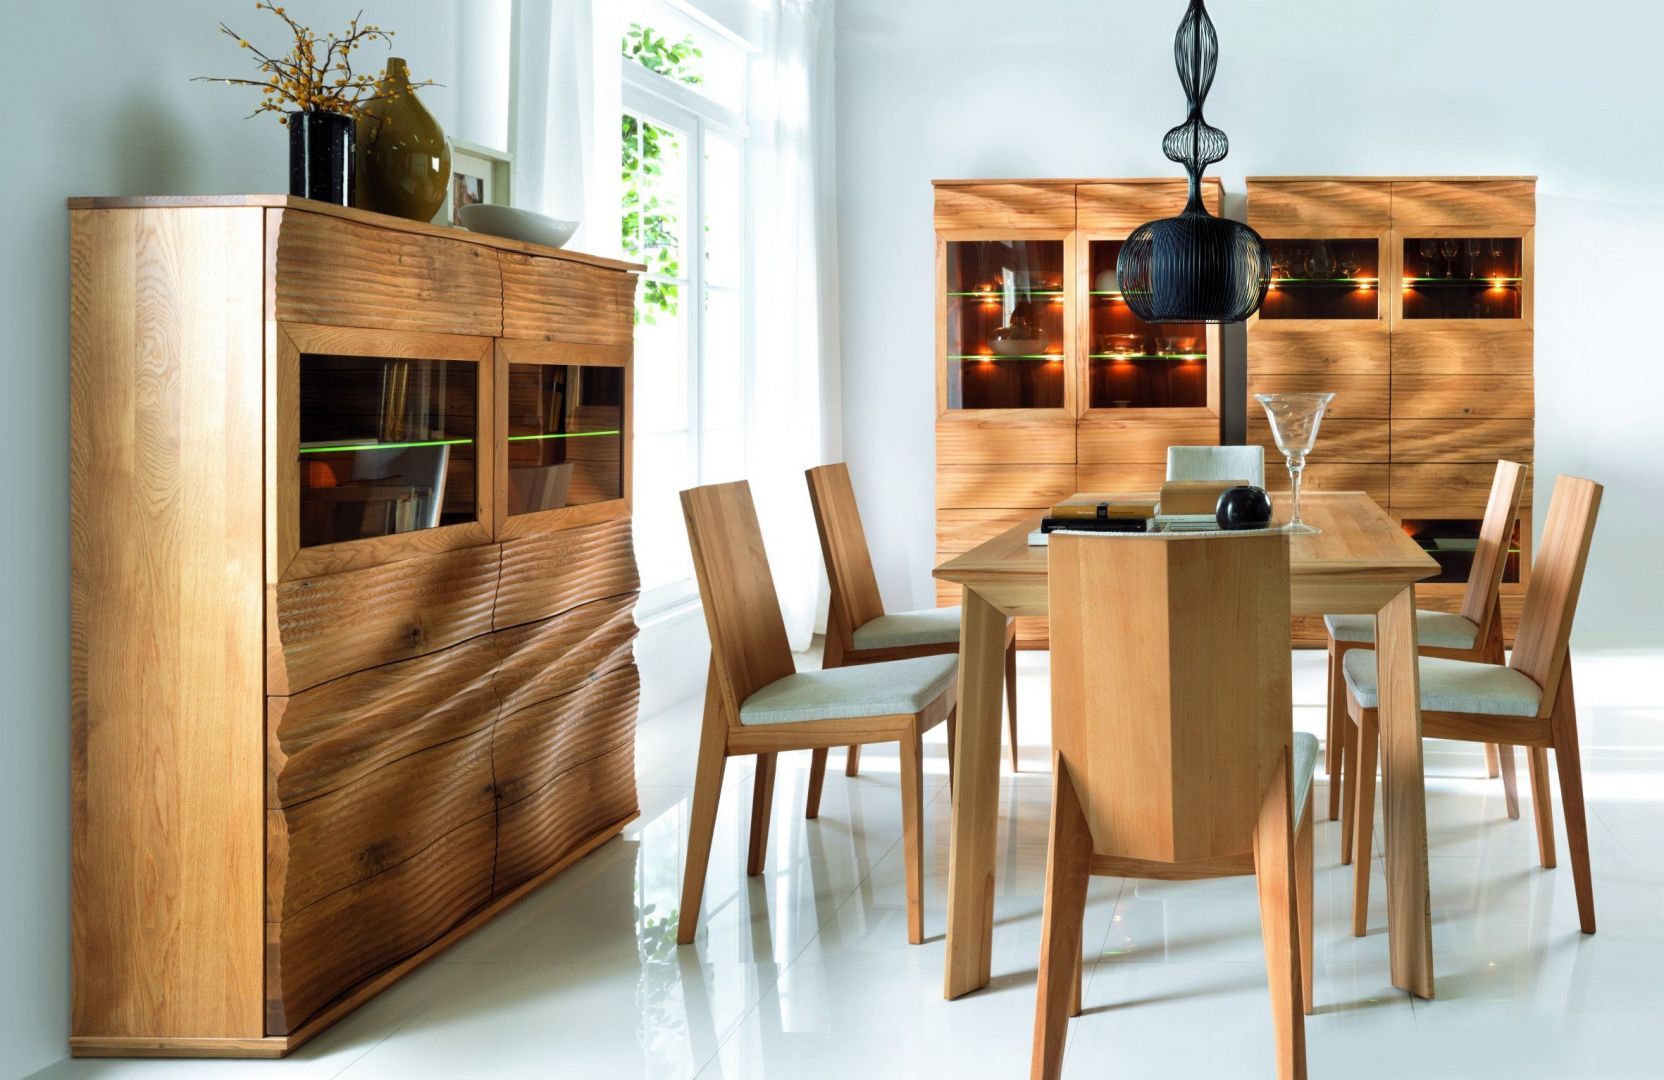 Wooden мебель. Десинг Вуд мебель. Деревянная мебель в интерьере. Стильная мебель из дерева. Мебель в эко стиле.